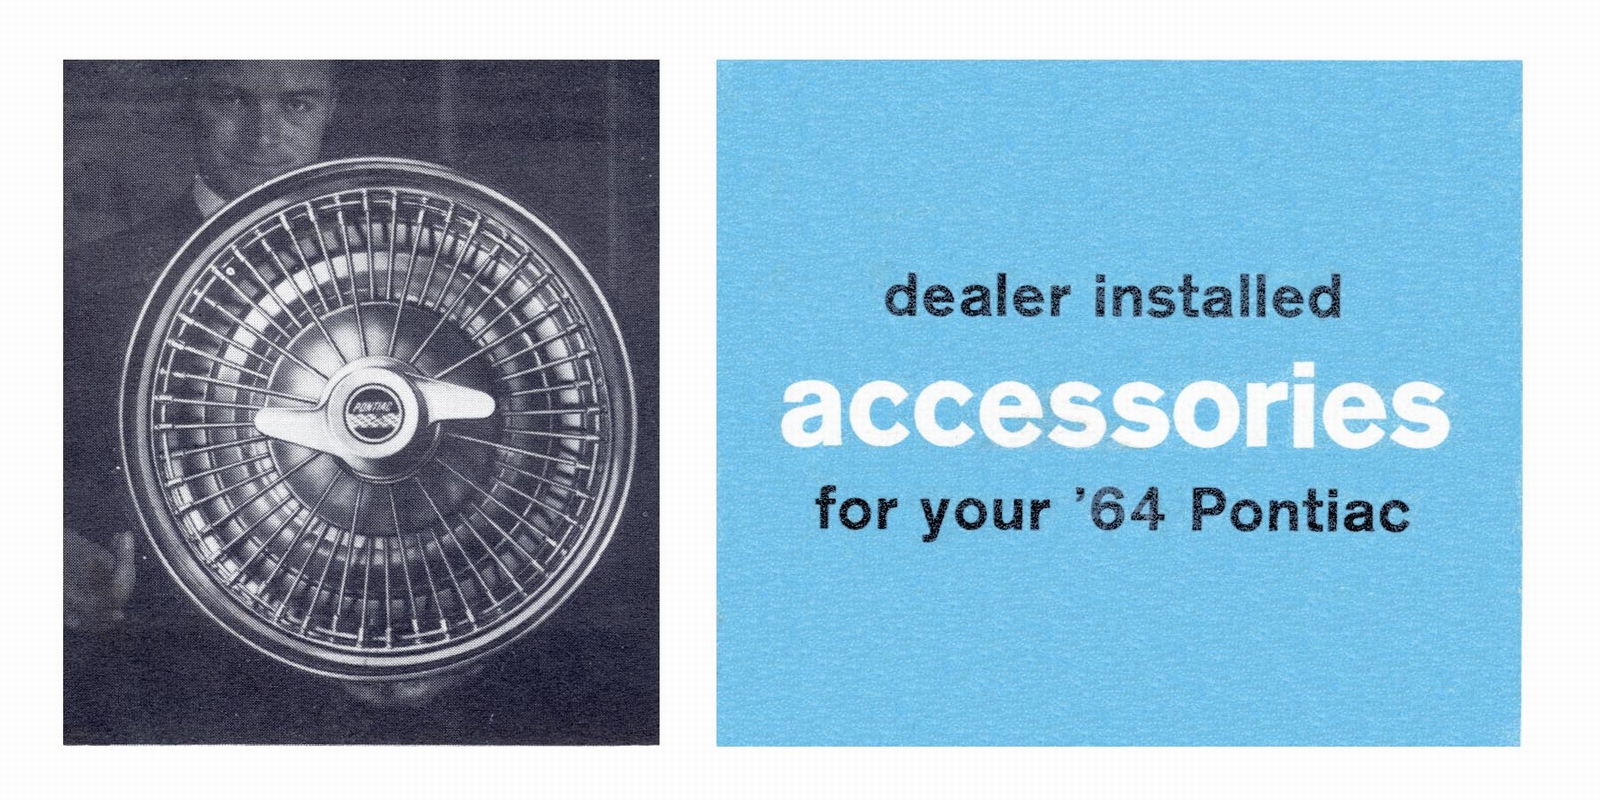 n_1964 Pontiac Dealer Installed Accessories-01.jpg